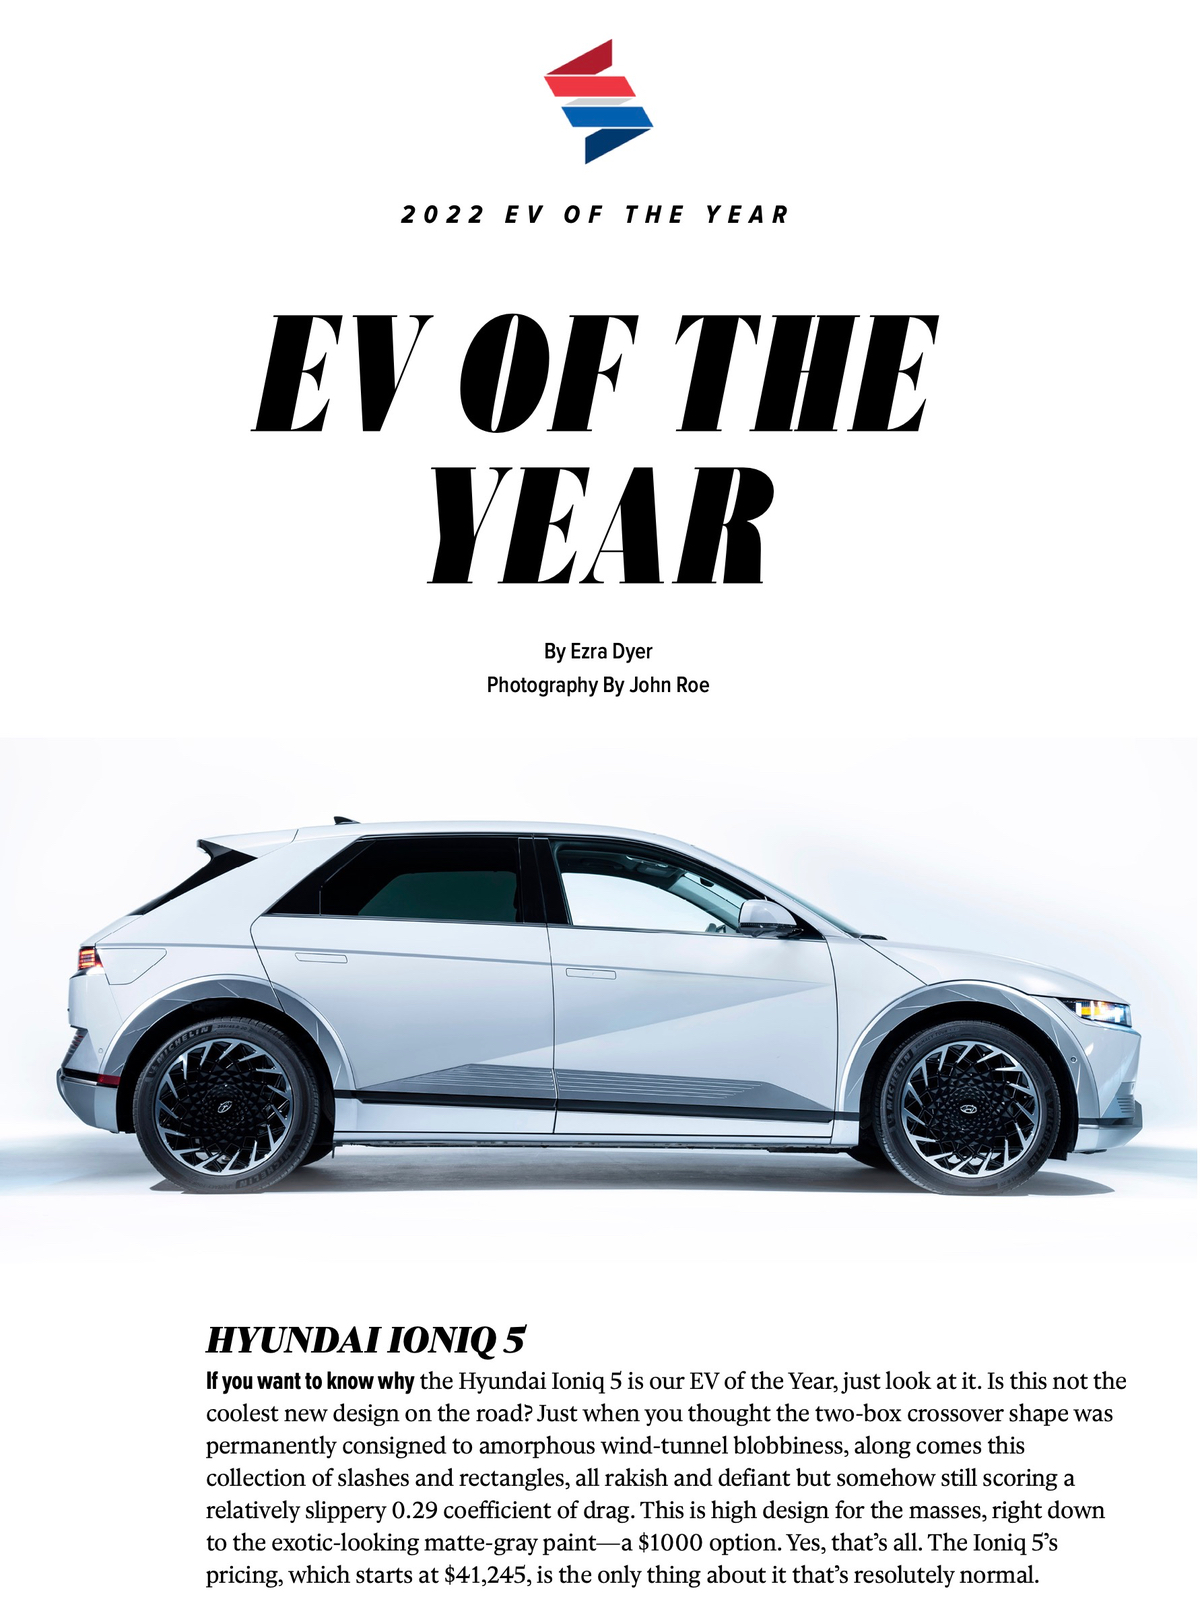 HYUNDAI IONIQ 5 được tạp chí Car And Driver bình chọn là xe điện của năm.